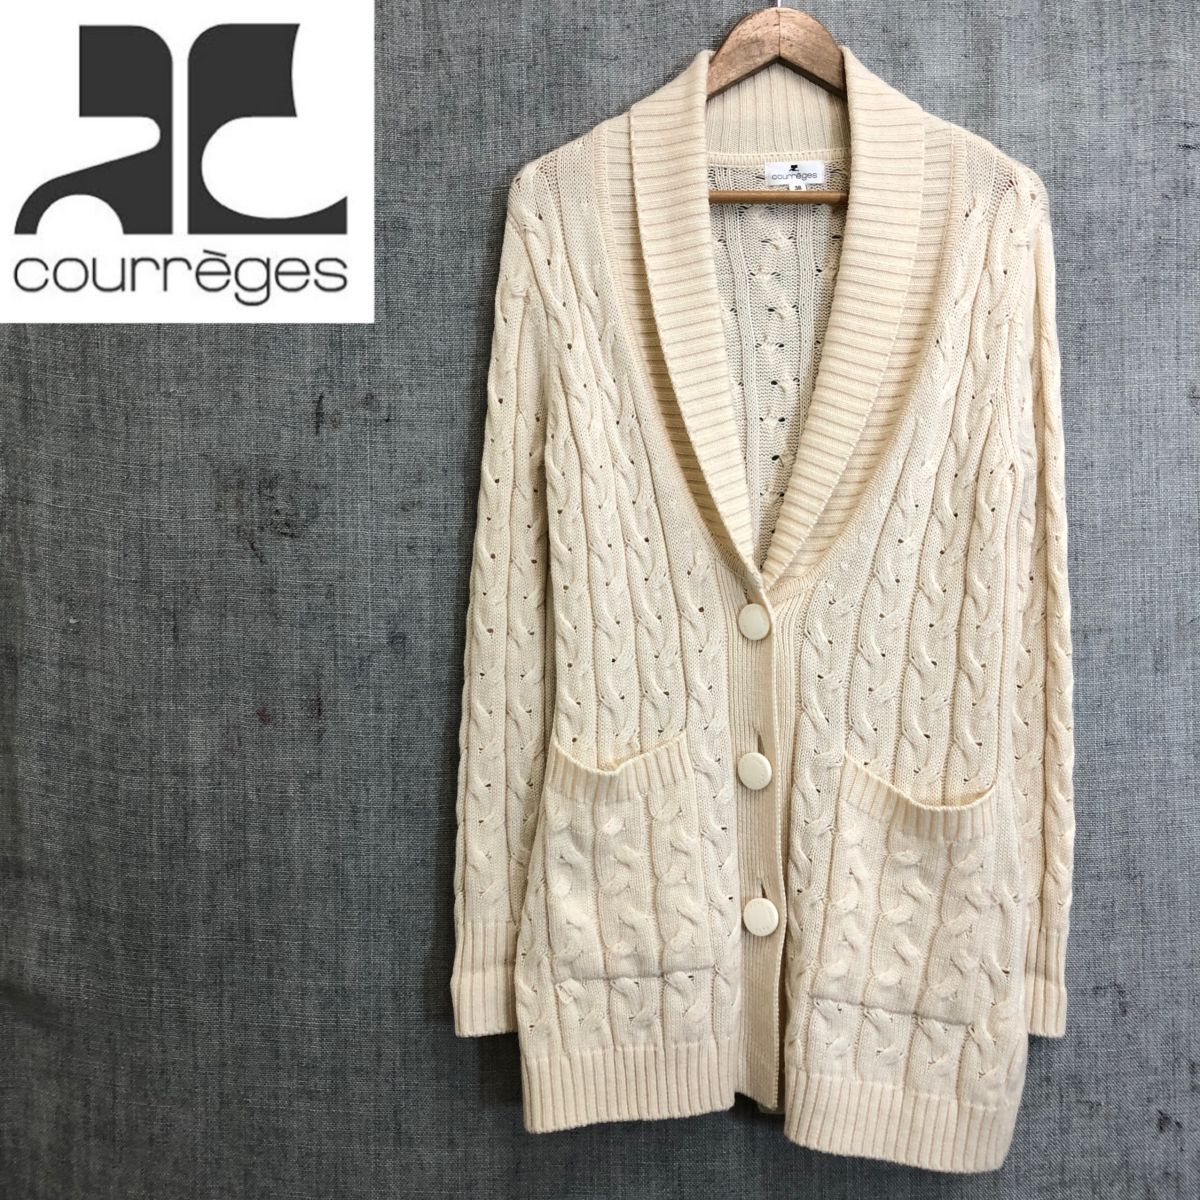 M1793-F* courreges Courreges кардиган вязаный свитер 3B * size38 шерсть акрил белый б/у одежда женский весна 